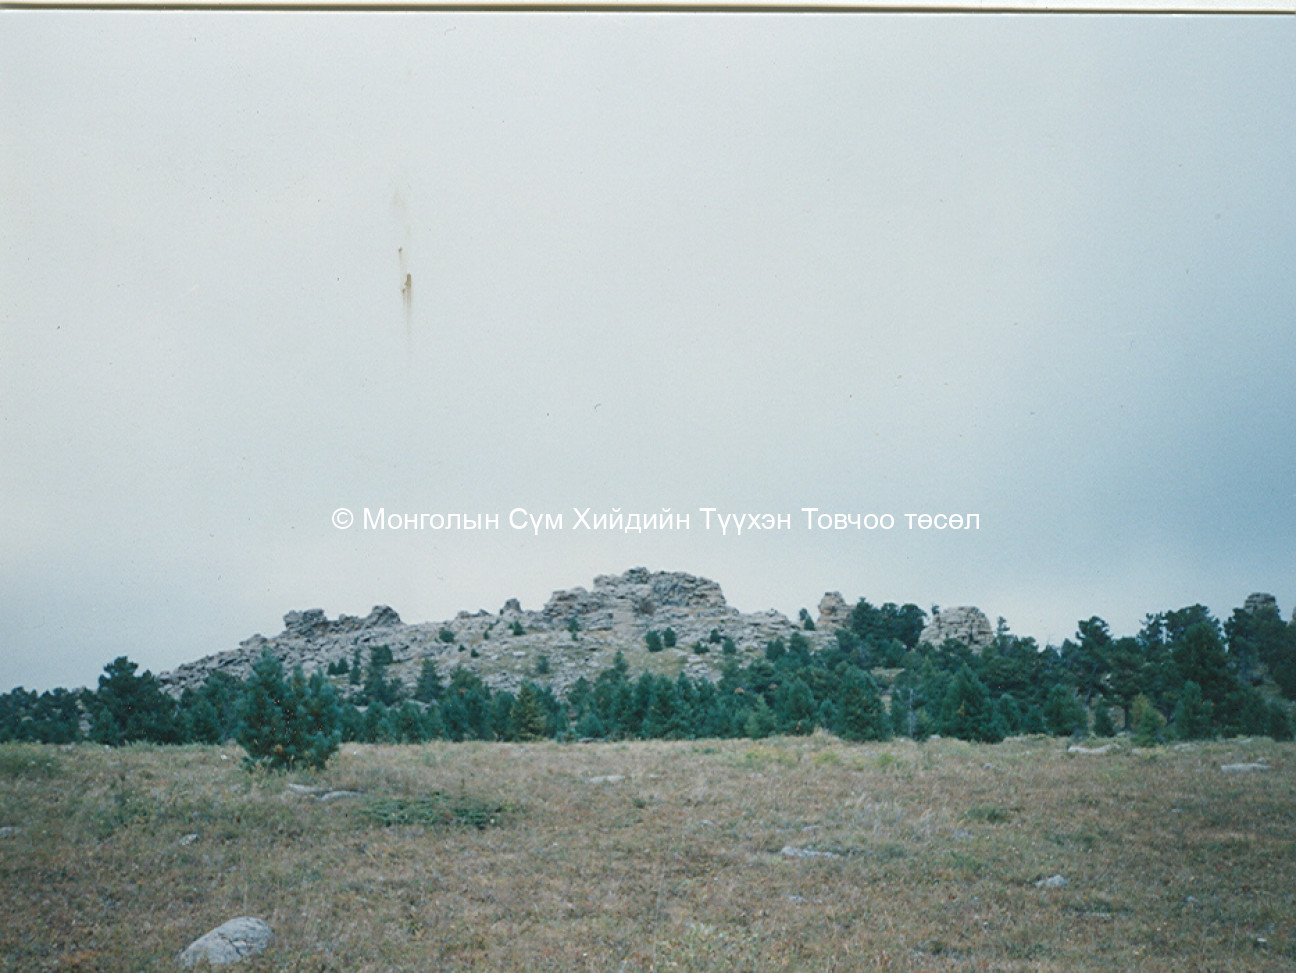 Tsetsee gün peak 2007